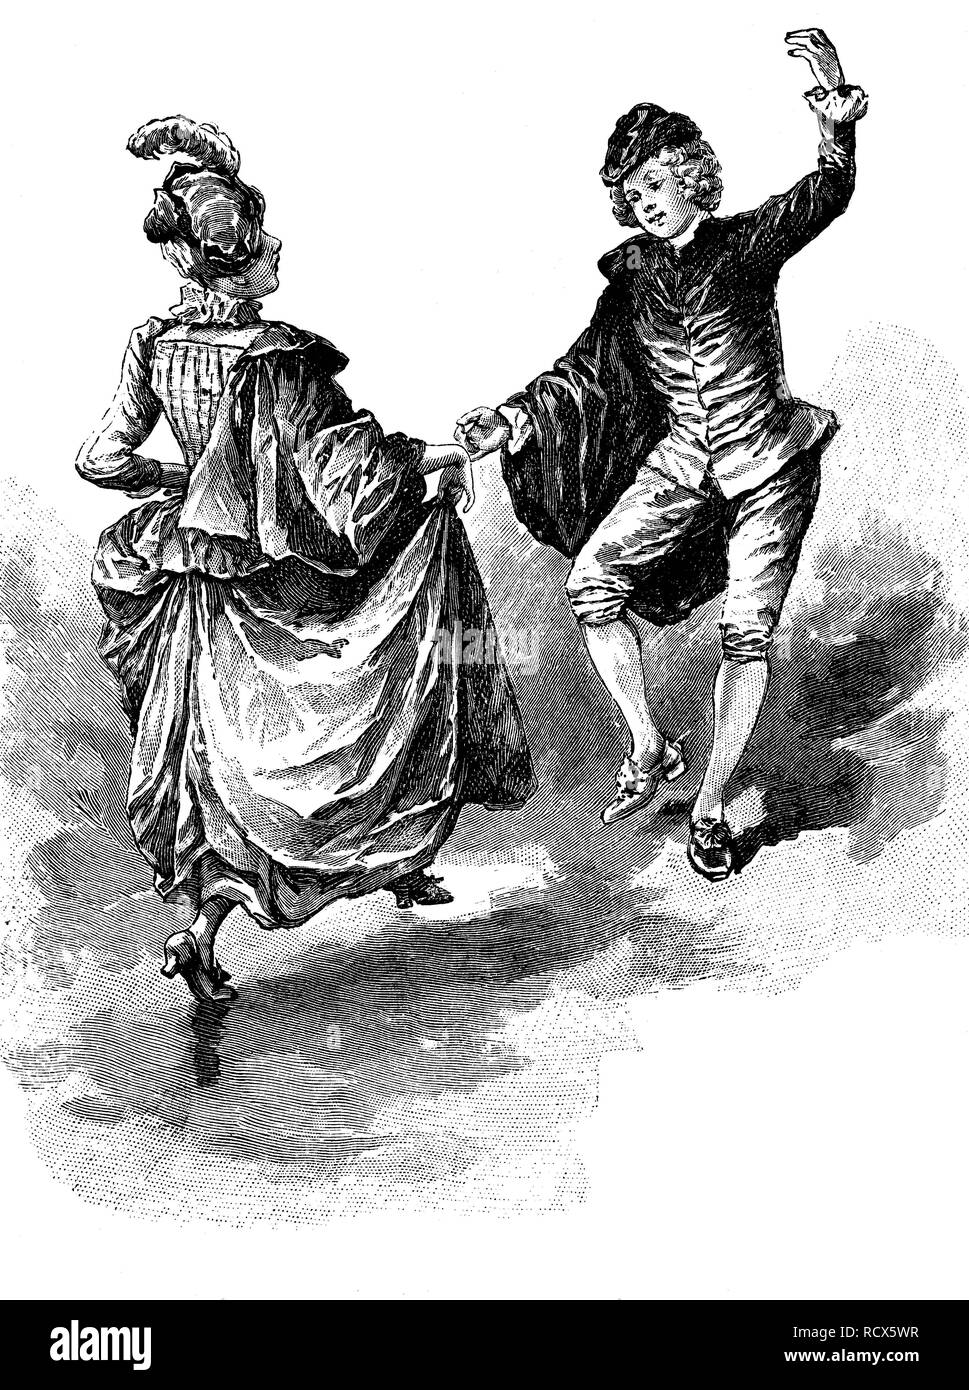 Sarabanda, danza, musica barocca, xilografia, 1888, incisione storica Foto Stock